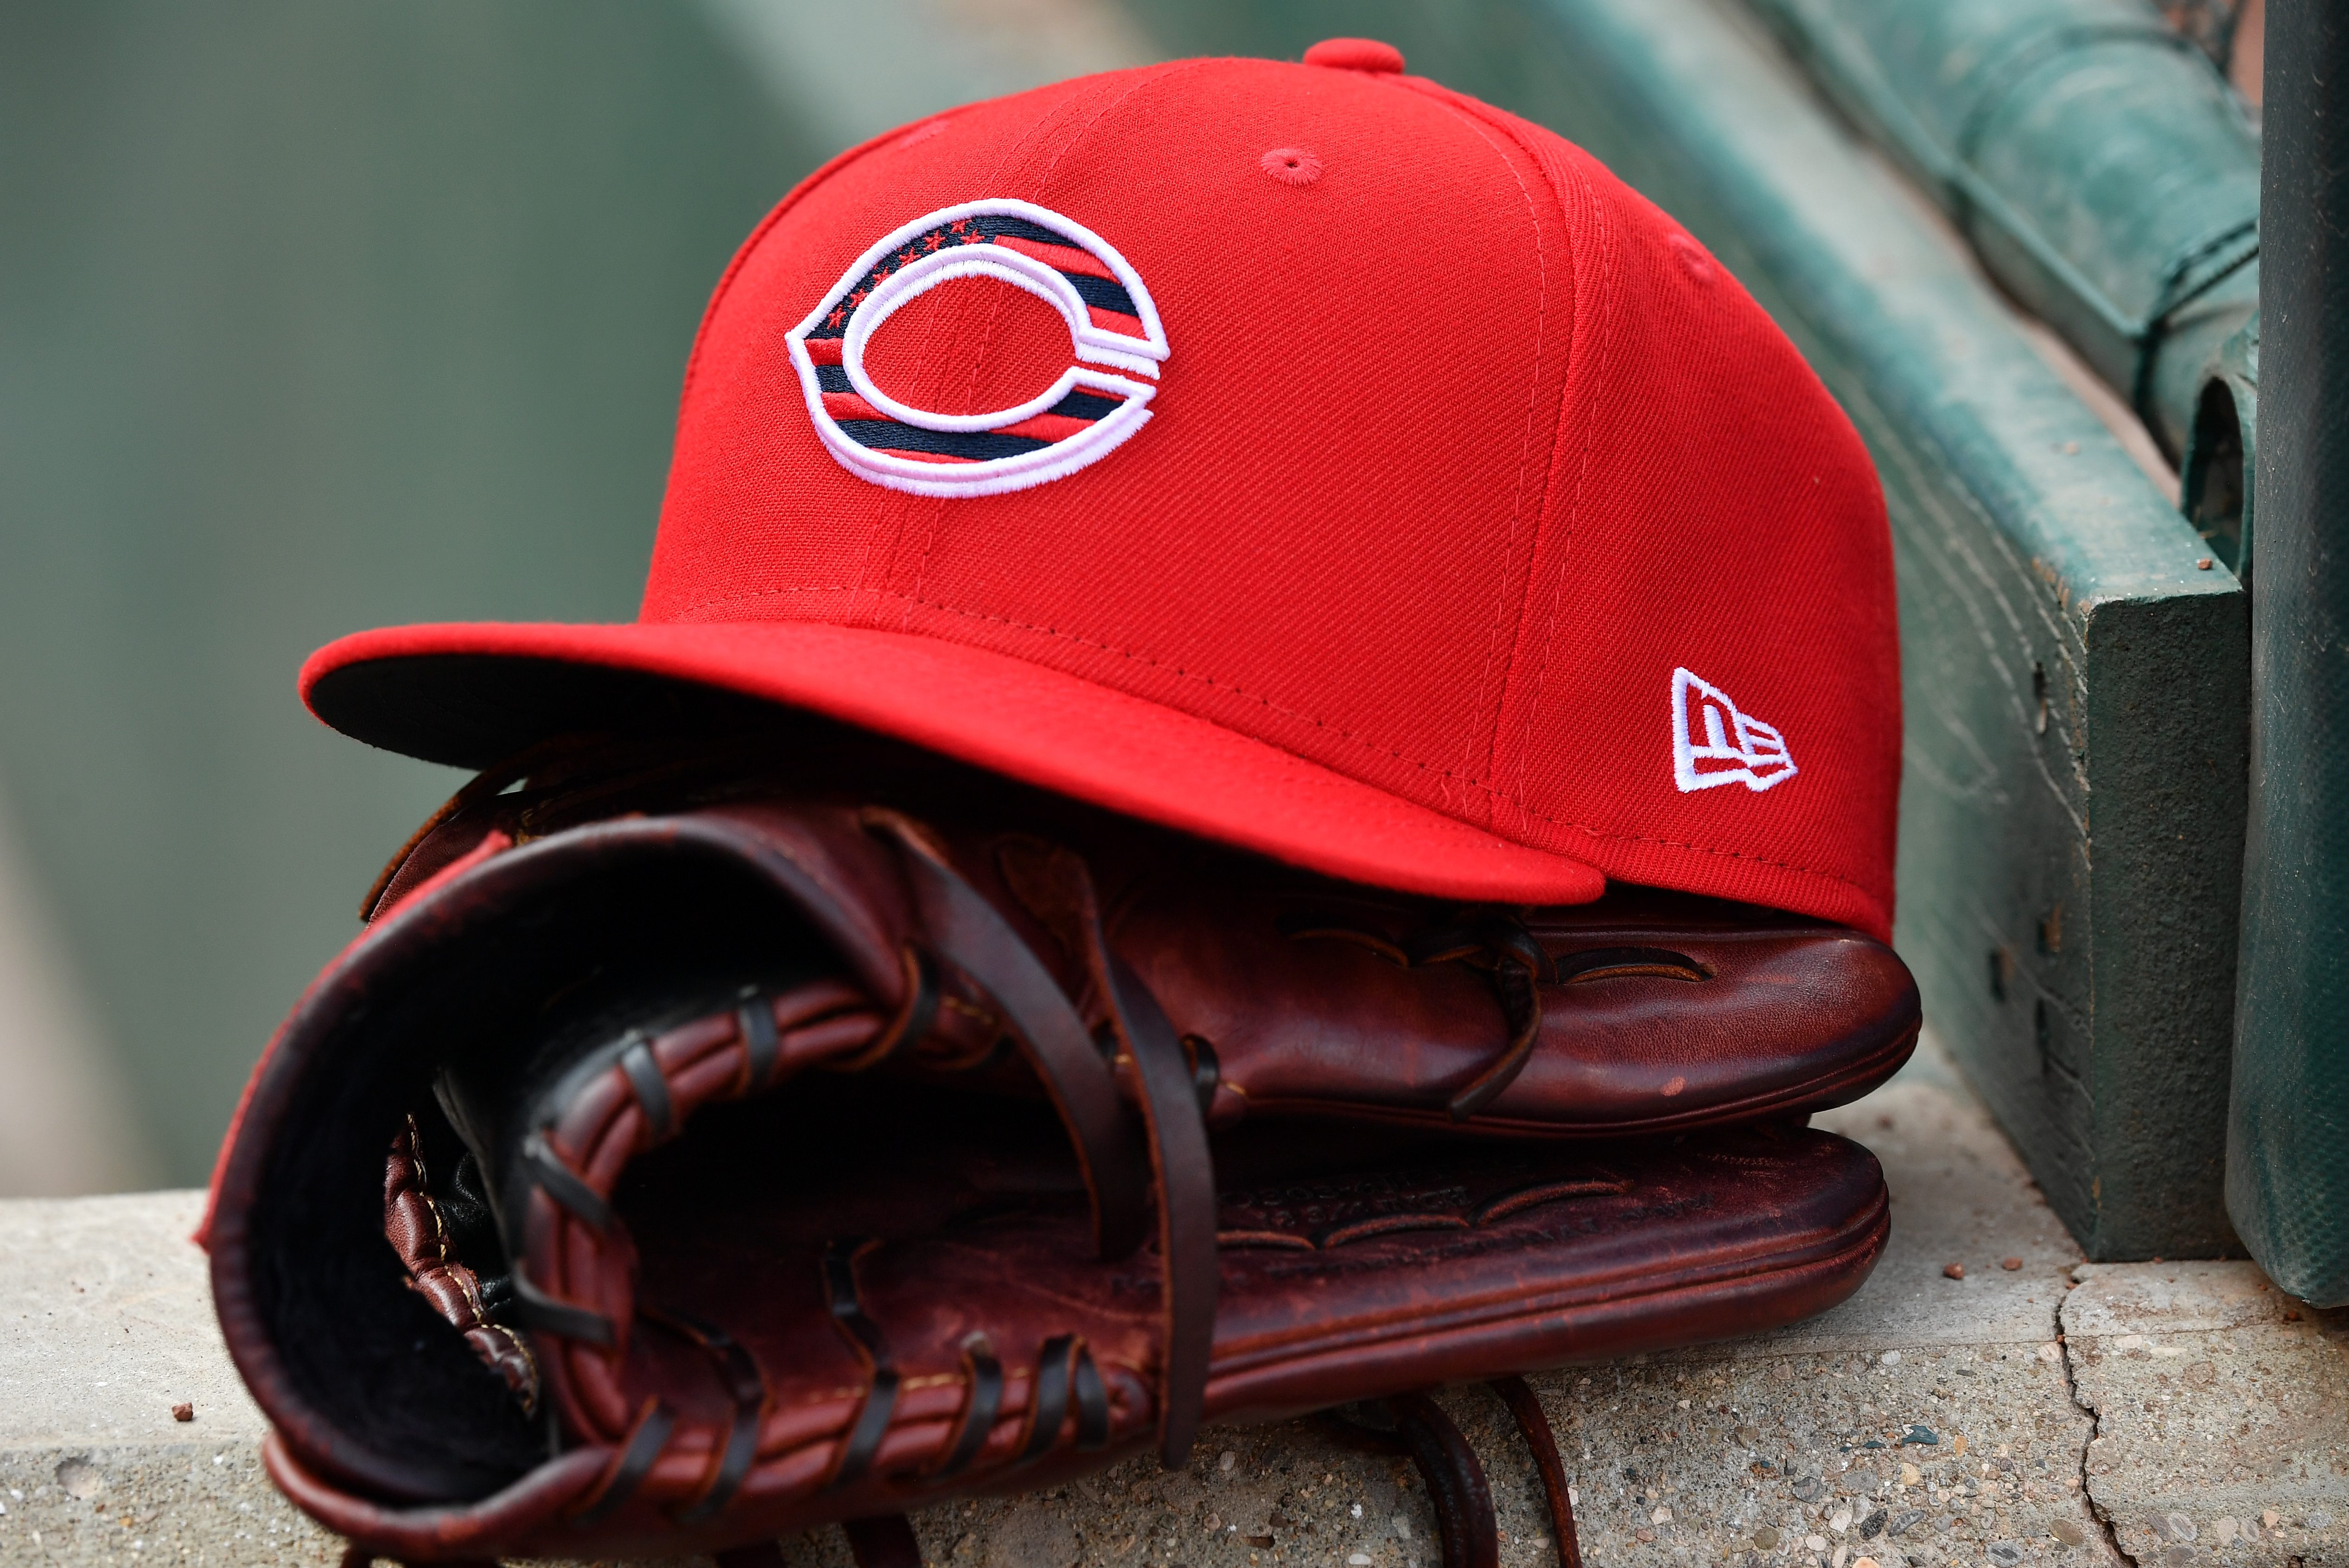 A close up view of a Cincinnati Reds cap with special logo